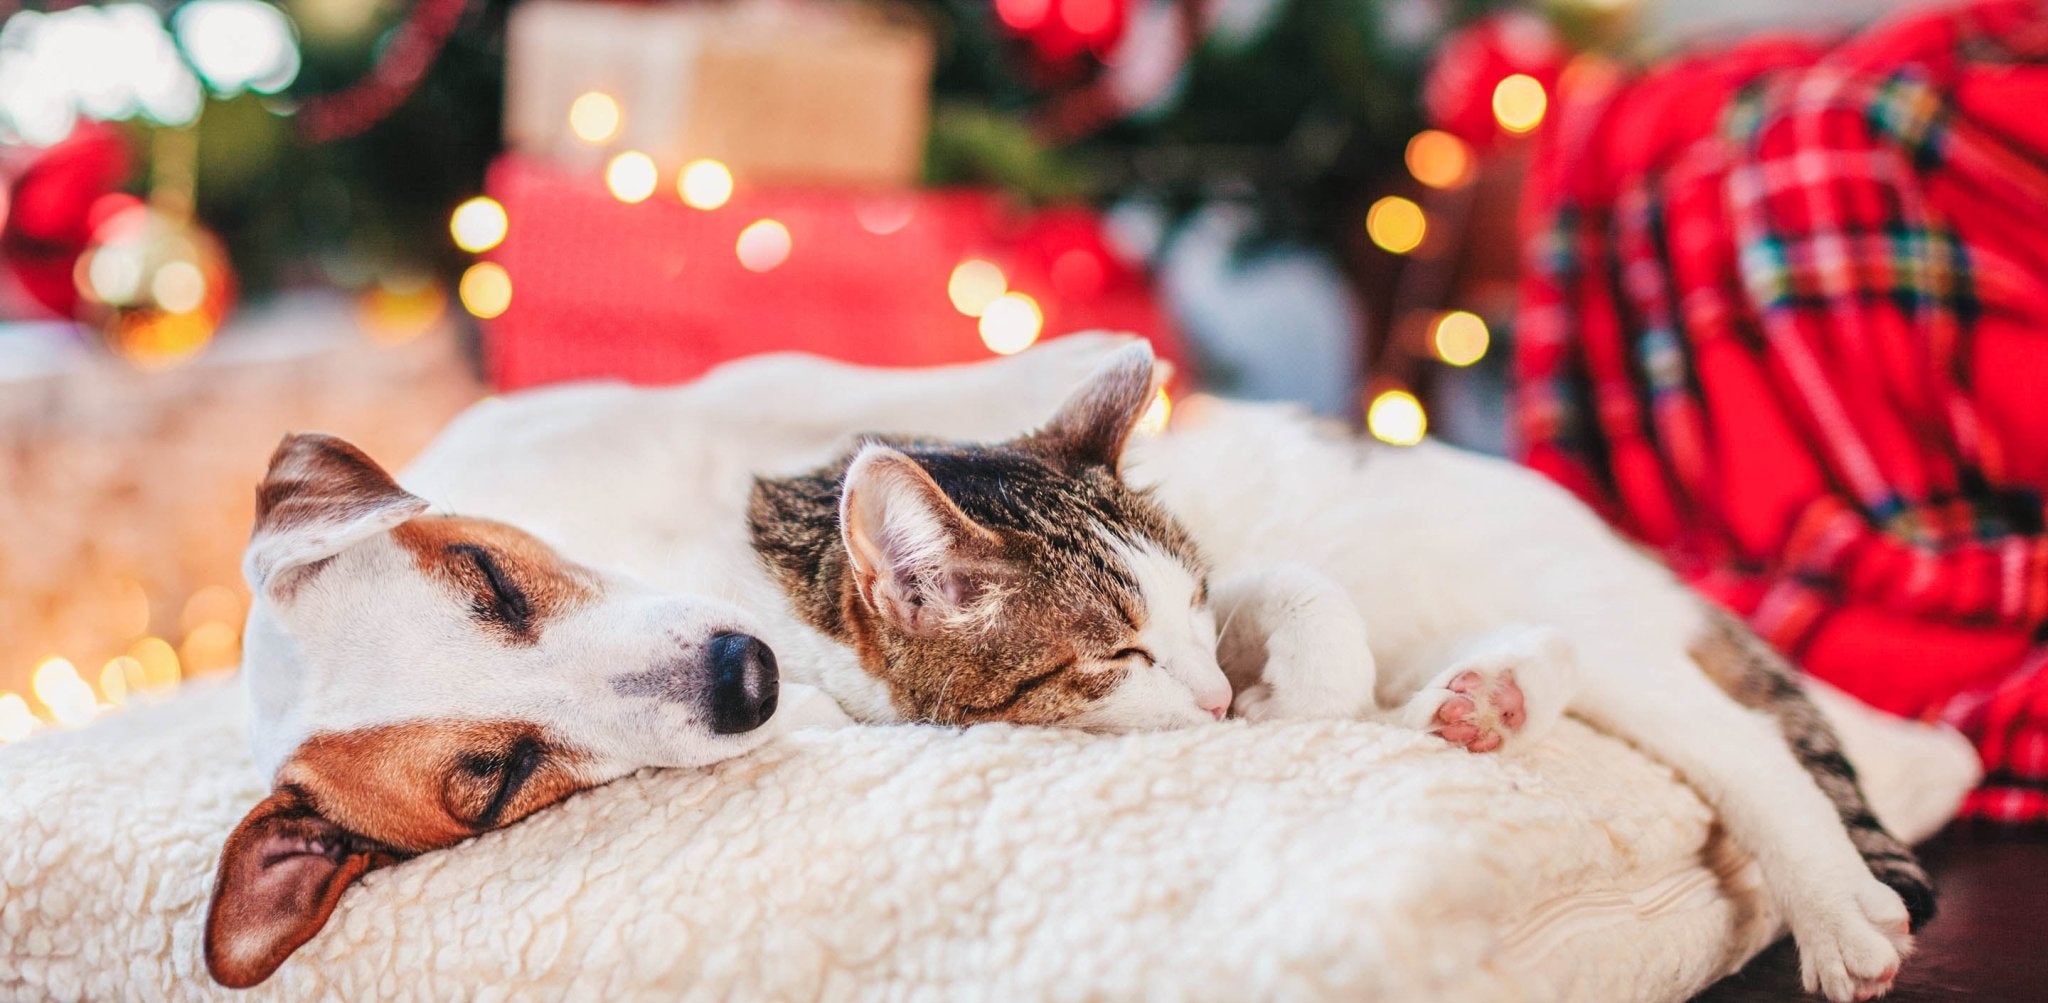 Weihnachten mit Haustieren – Wie du das Fest sicher und spaßig für deine Vierbeiner gestaltest - Infinity Paws